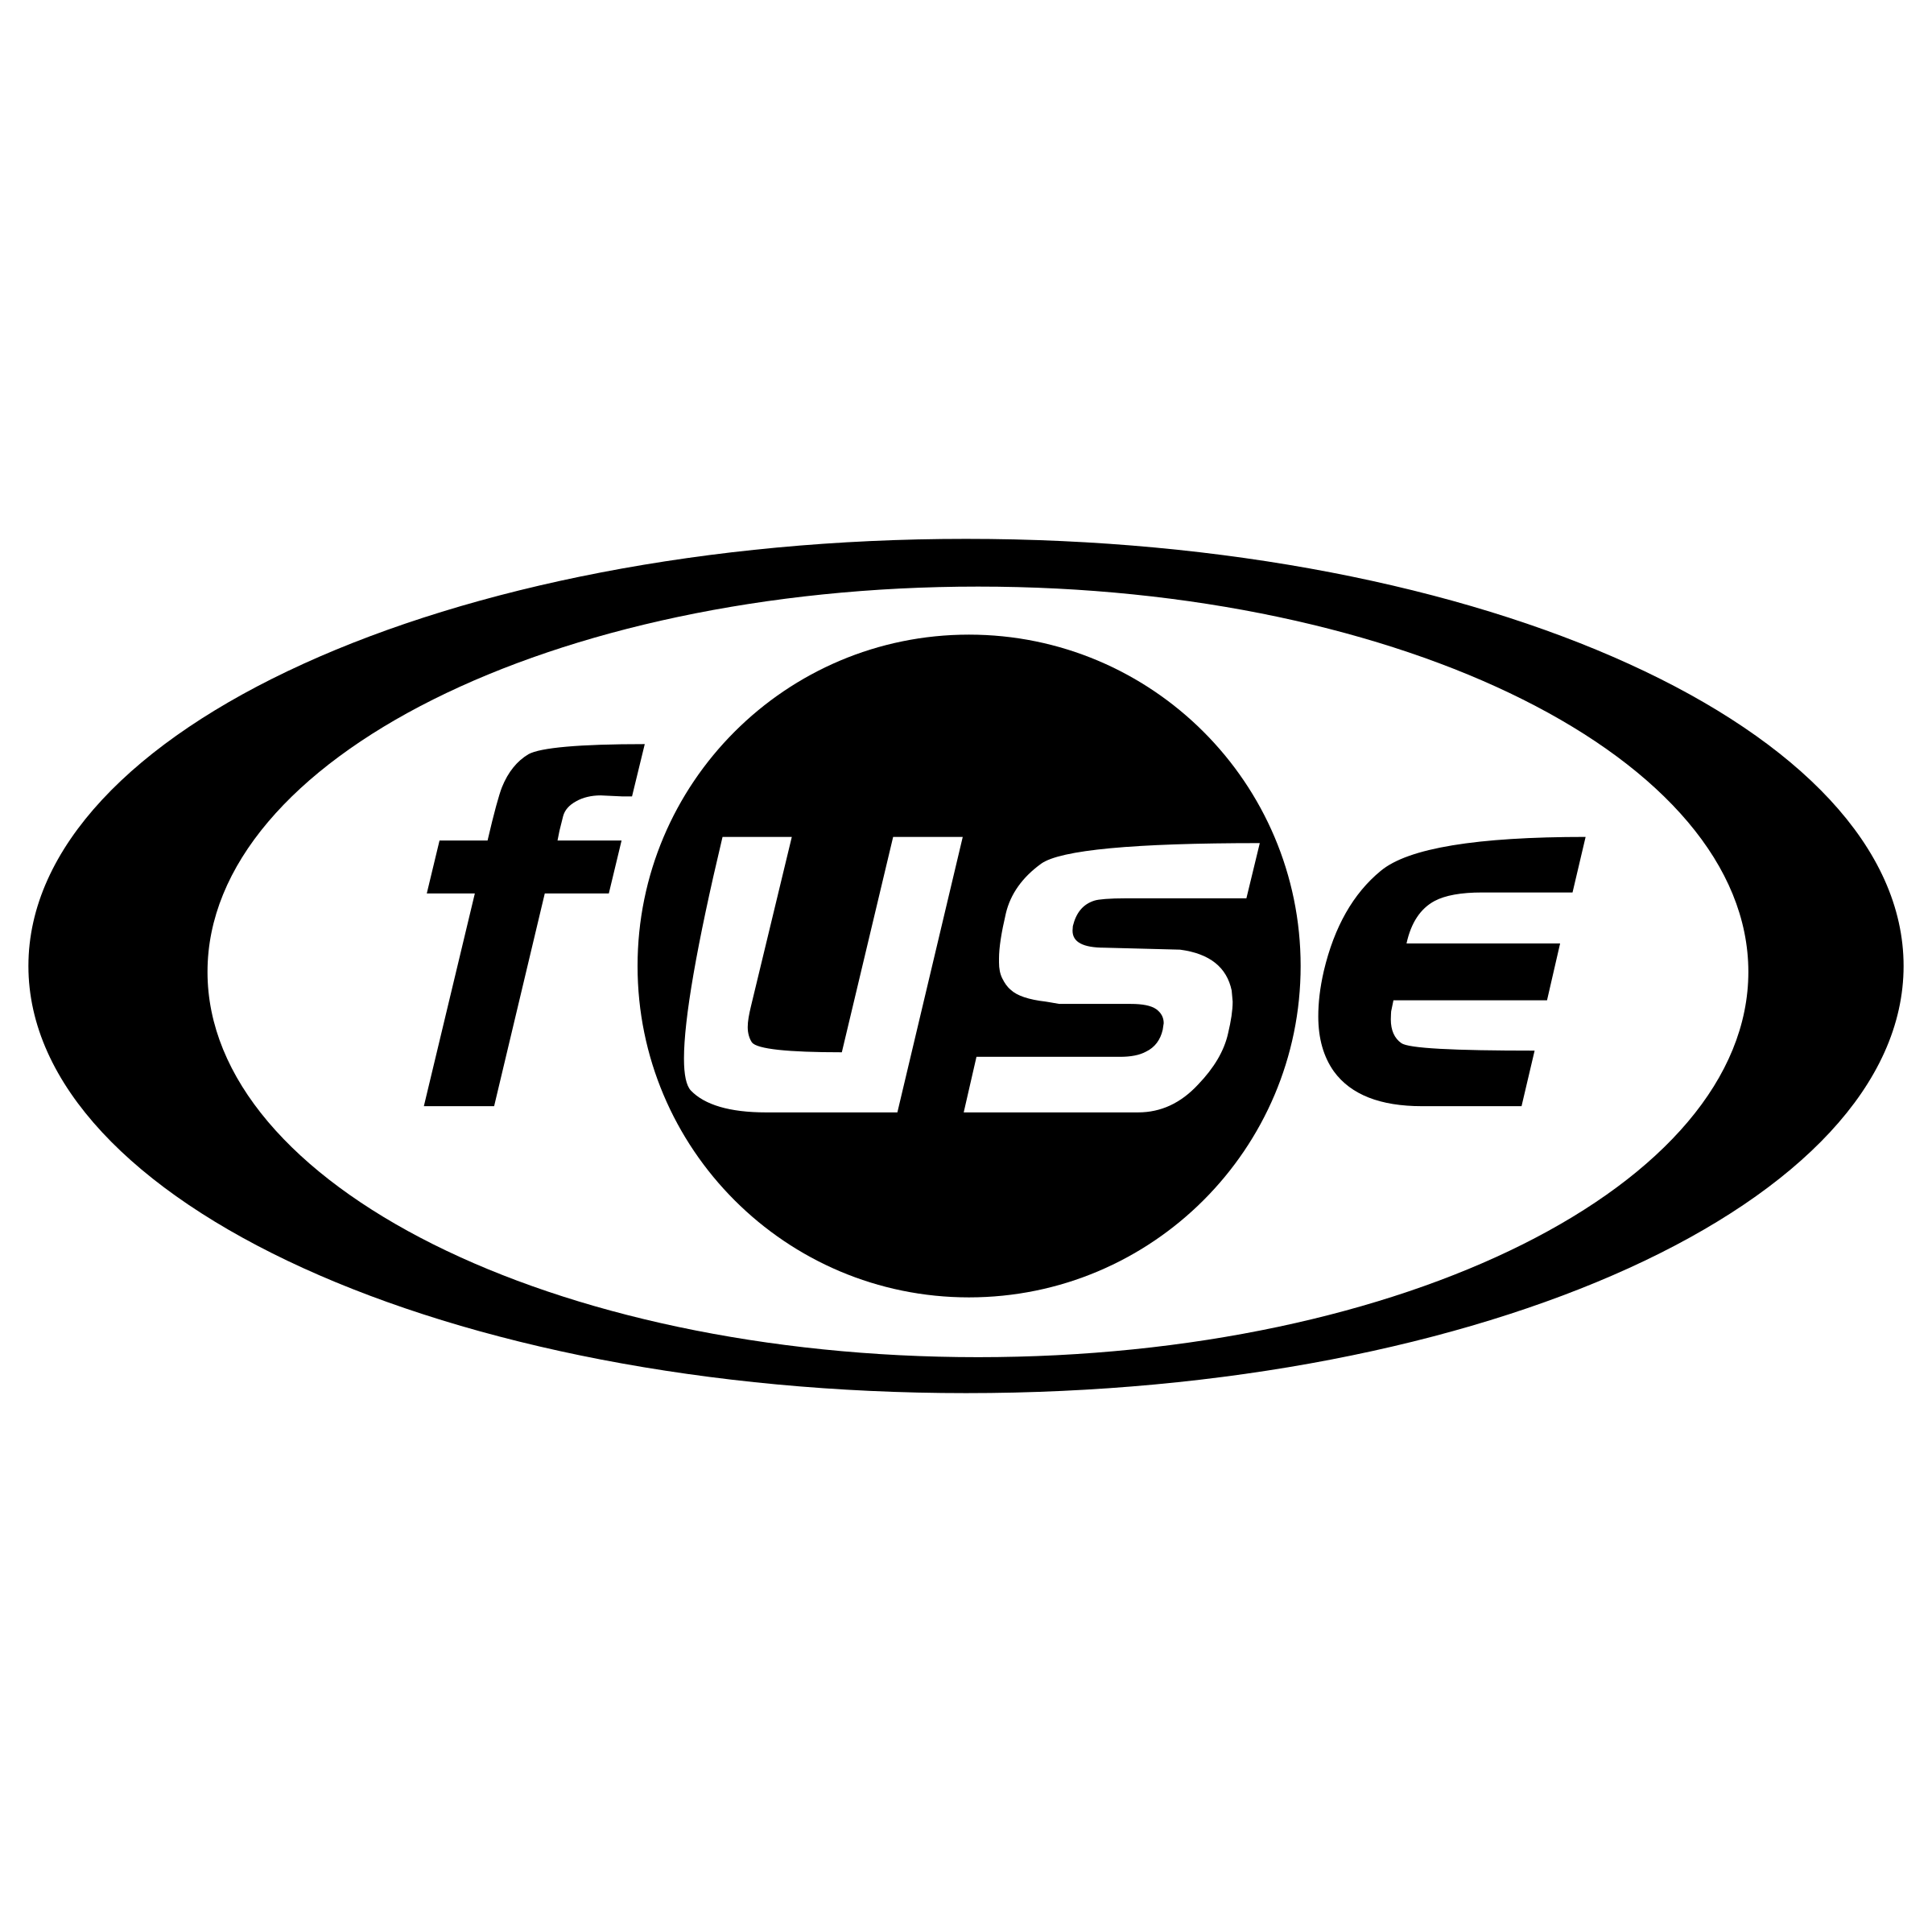 Fuse Logo - Fuse Logo PNG Transparent & SVG Vector - Freebie Supply